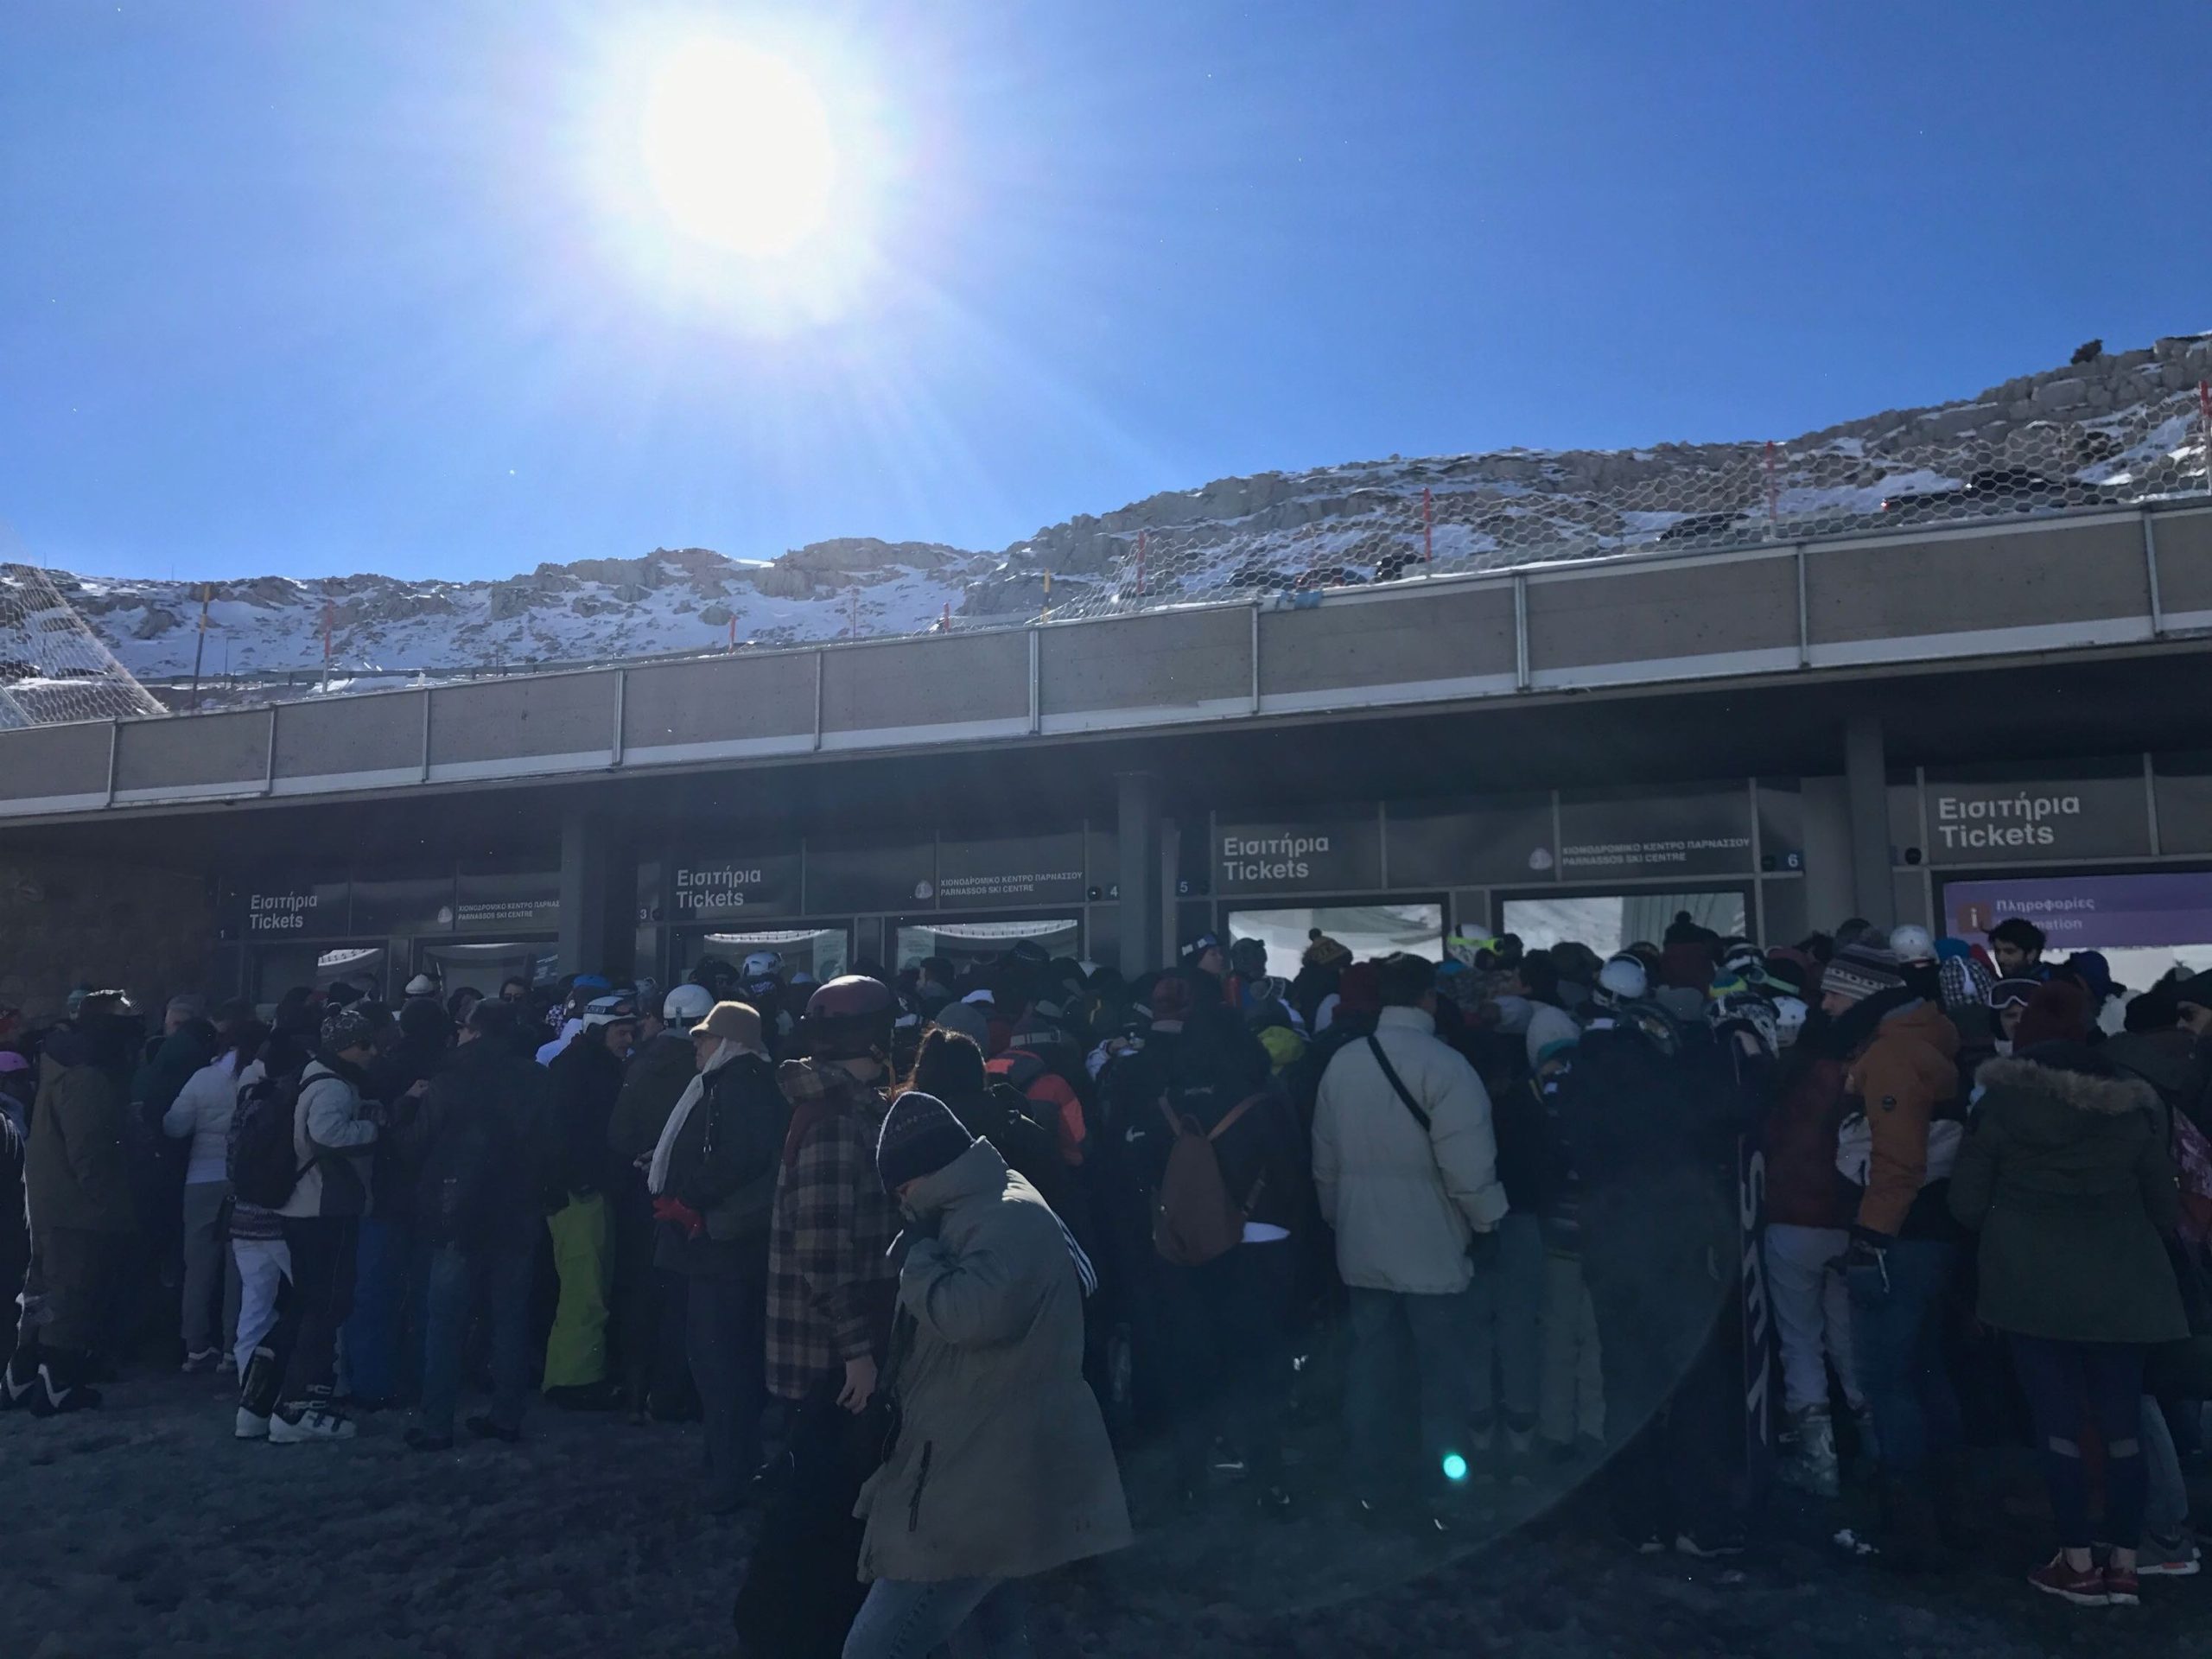 Χαοτικές καταστάσεις στο Χιονοδρομικό Κέντρο Παρνασσού: Χιλιάδες άνθρωποι εγκλωβισμένοι – Τι απαντά η εταιρεία